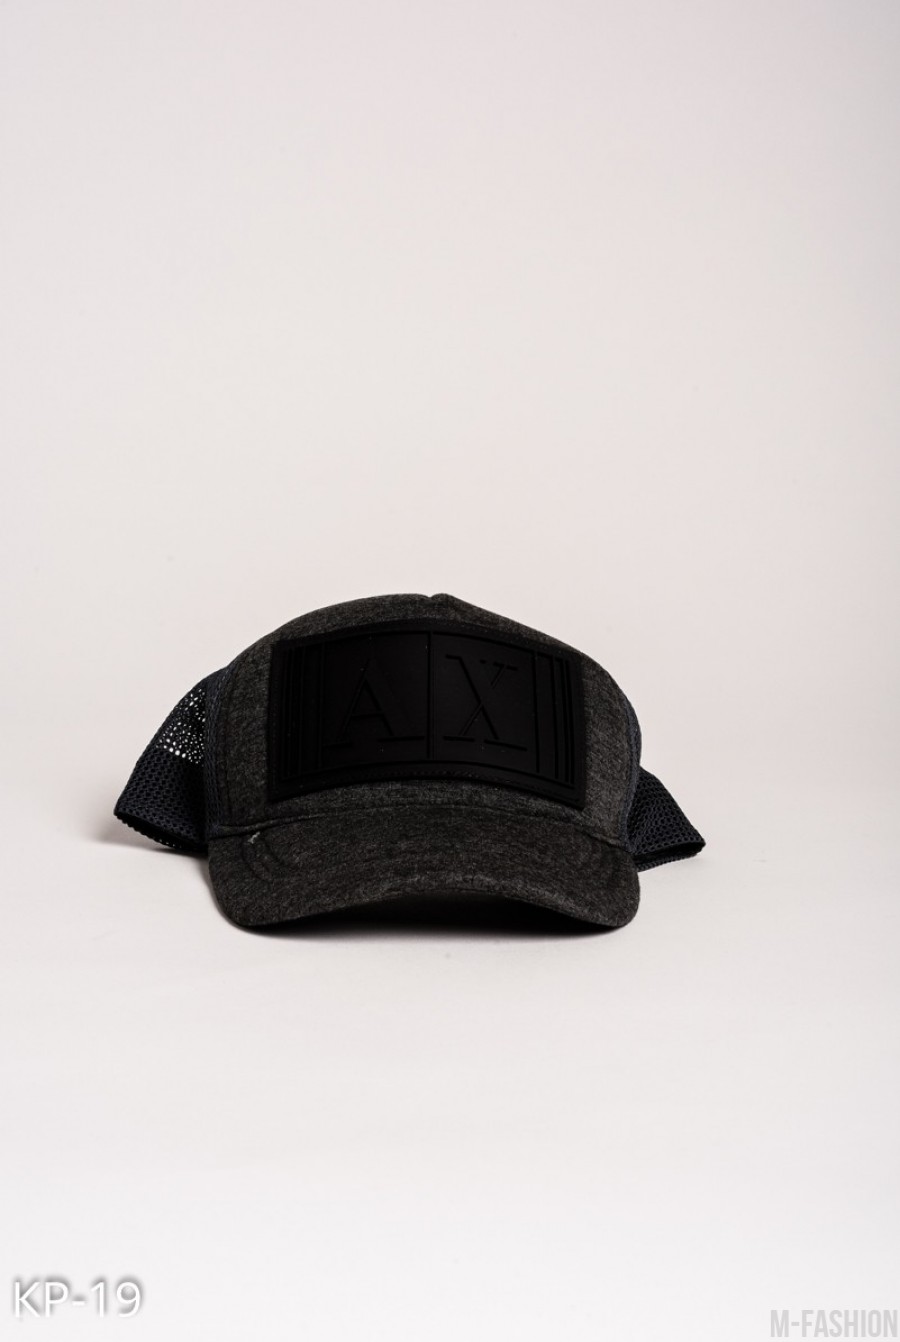 Темно-серая кепка с черной фактурной нашивкой и сеткой на затылке - Фото 1